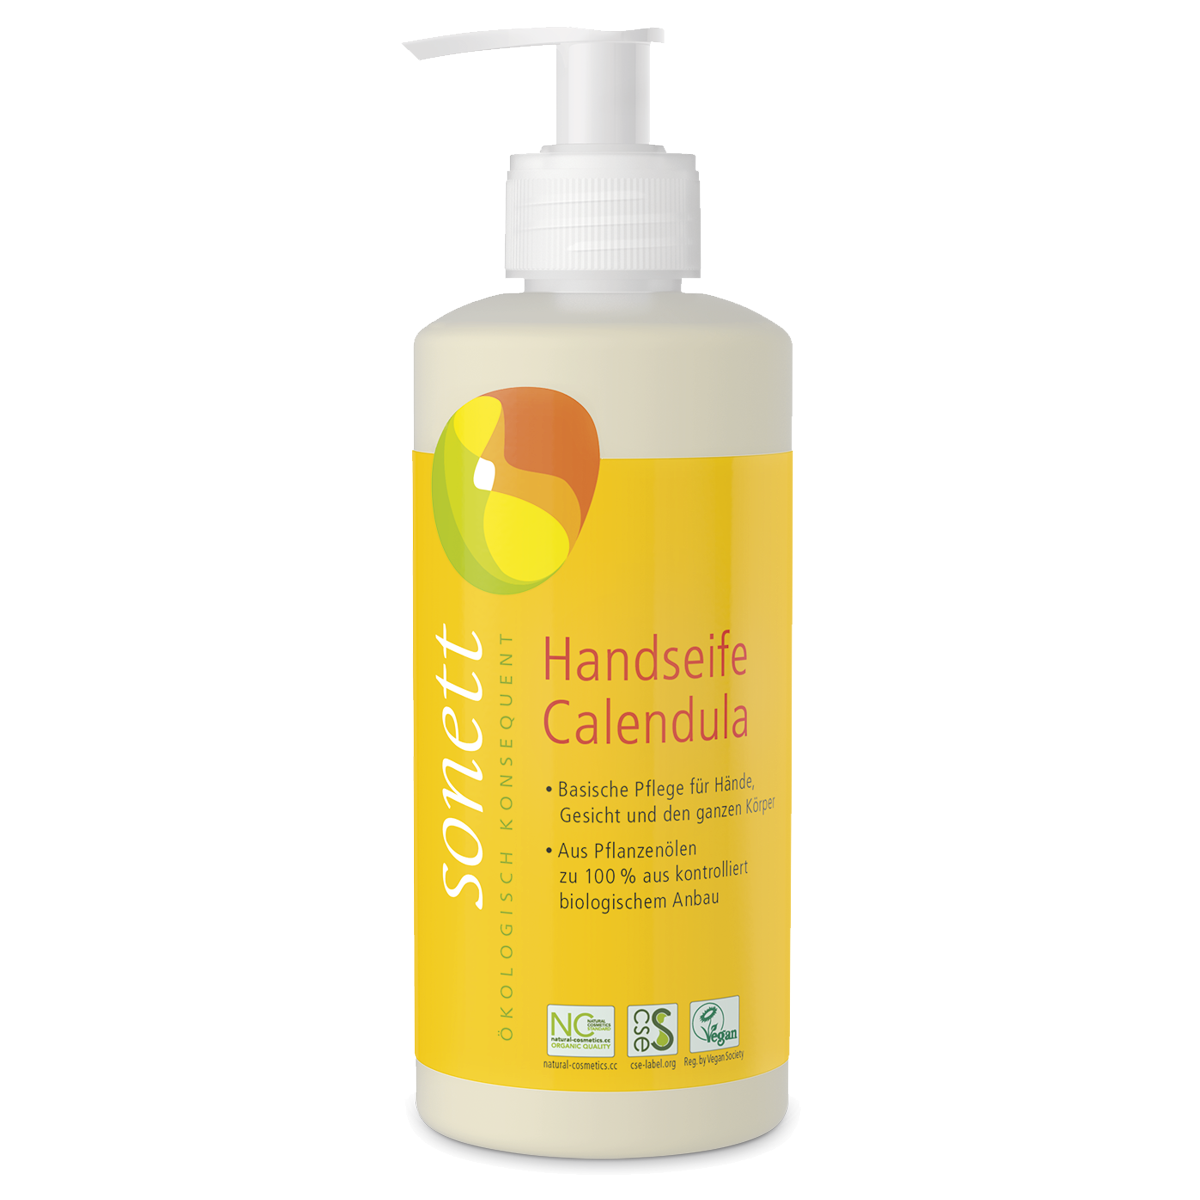 Sonett Handseife Calendula Dispenser 300 ml